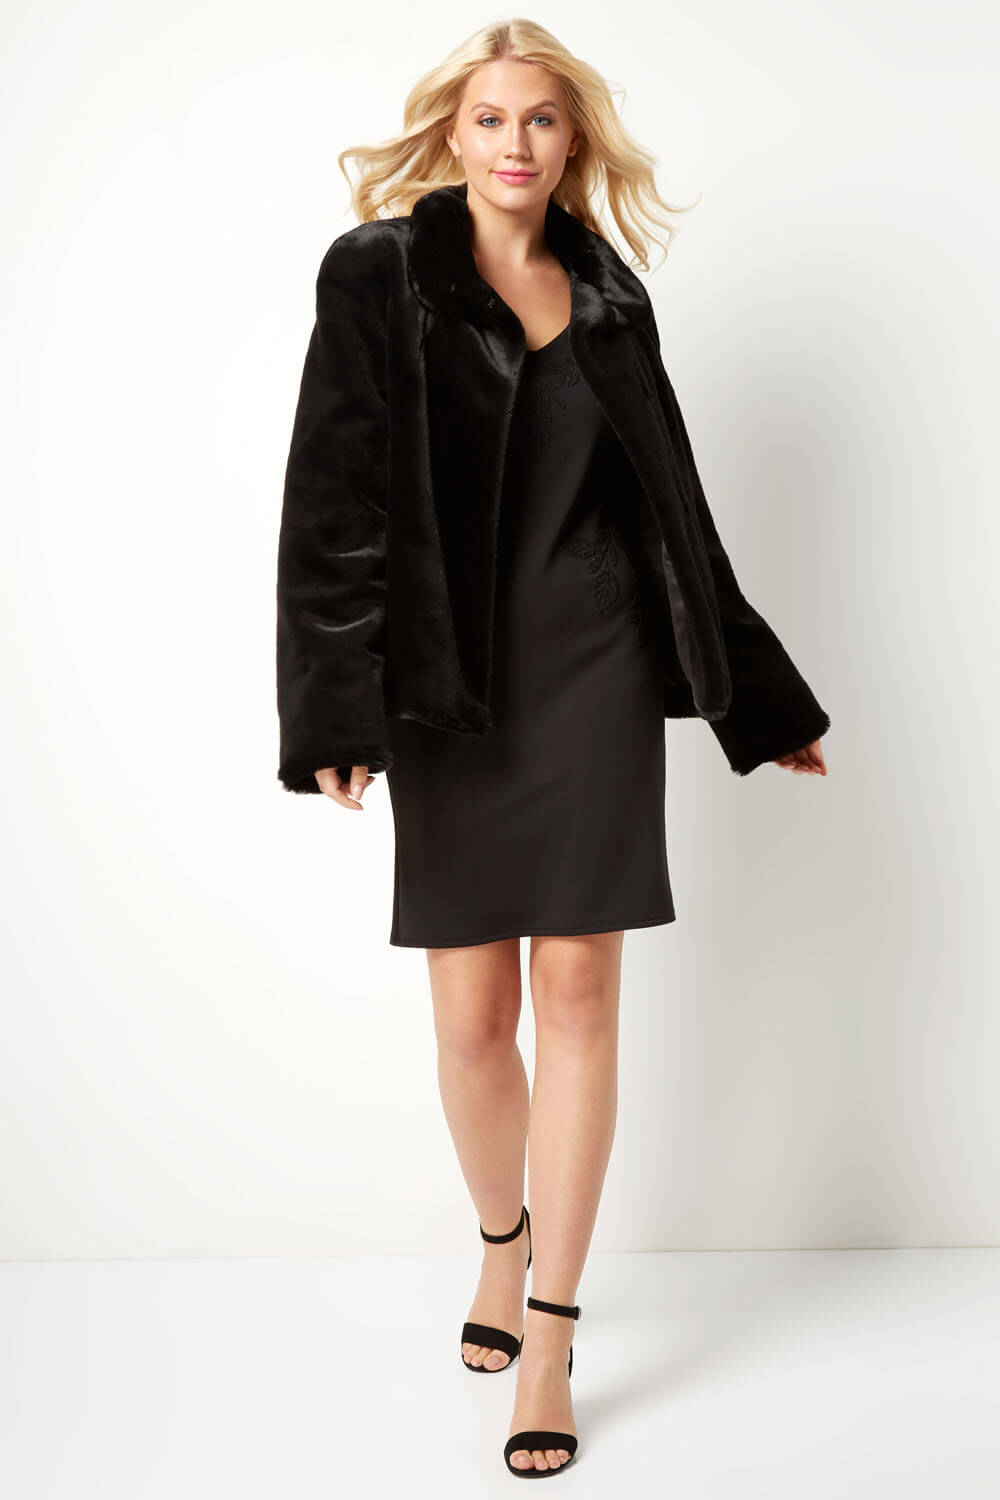 Black Short Faux Fur Jacket, Image 2 of 4